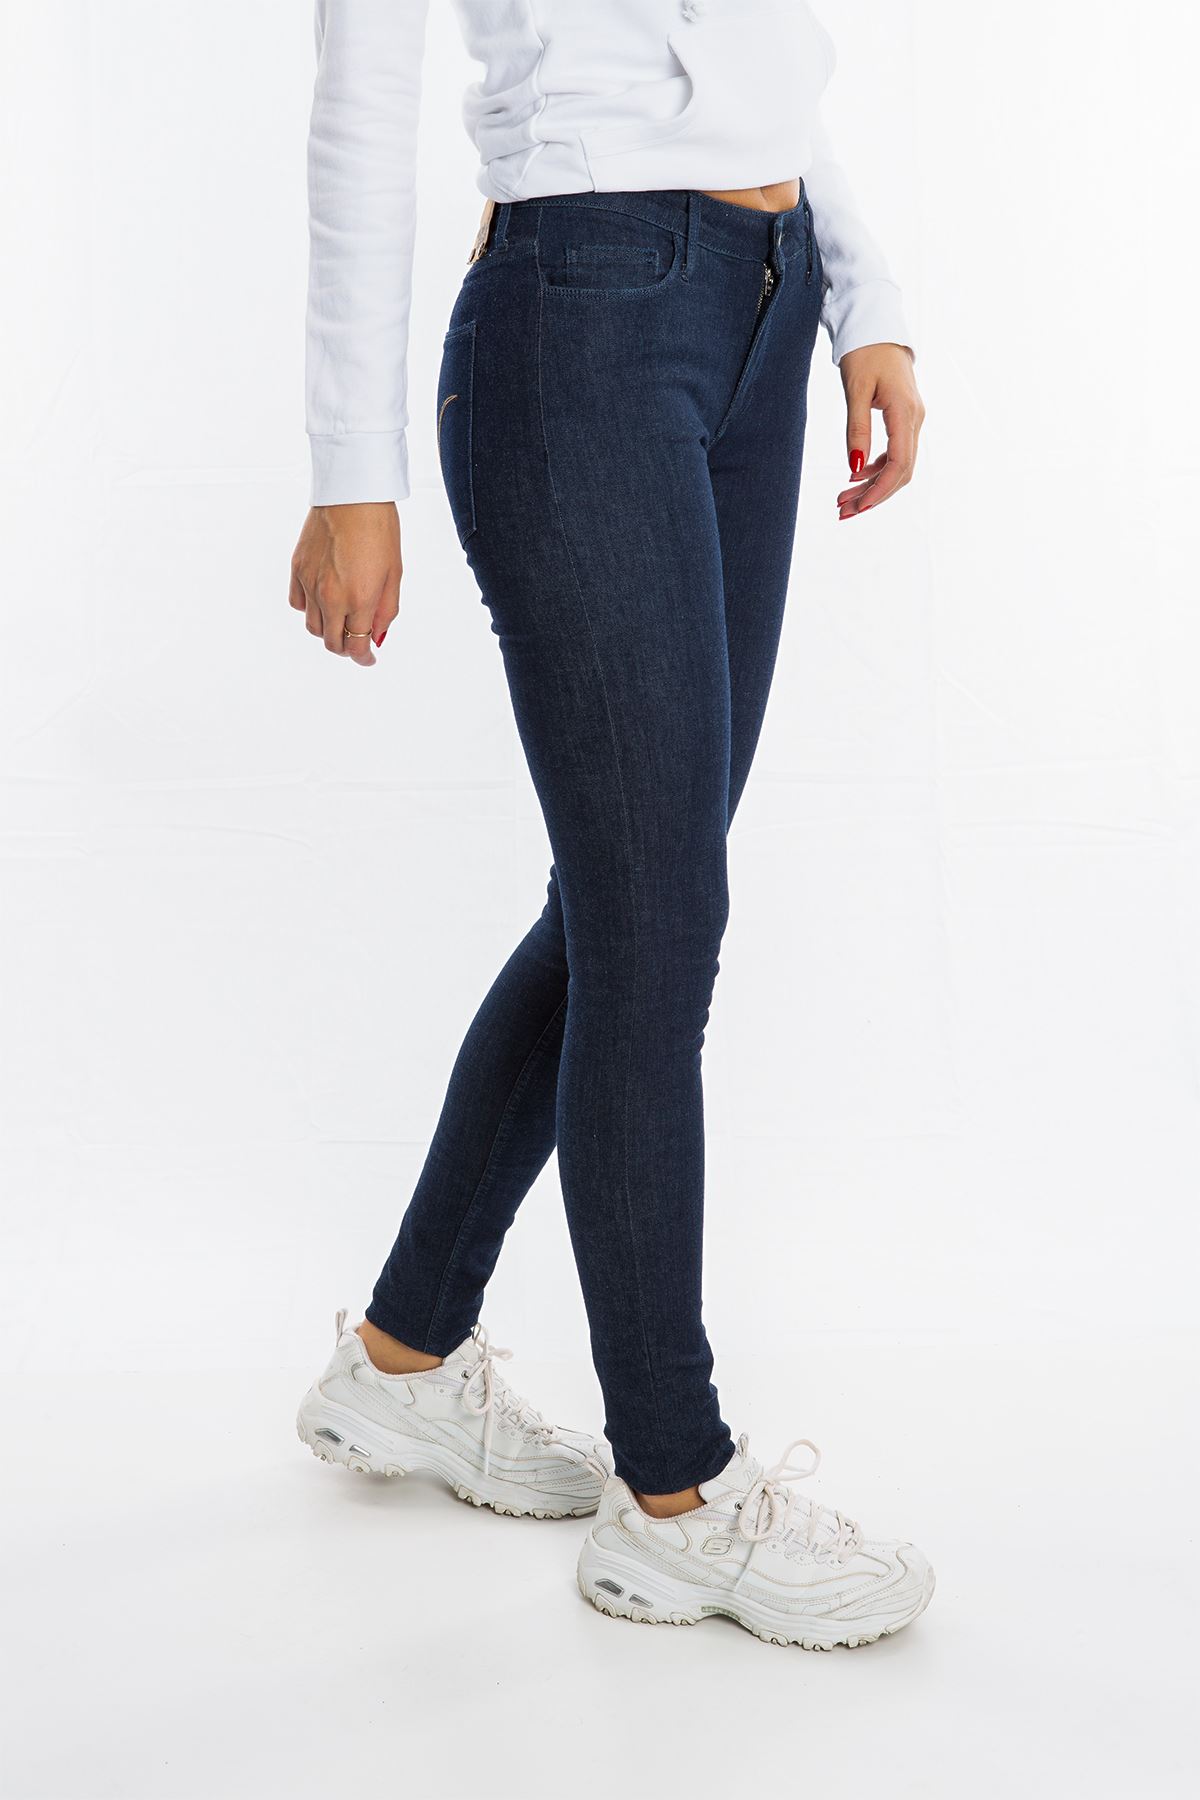 Monkee Genes Koyu Mavi Dar Paça Kadın Jean Pantolon 